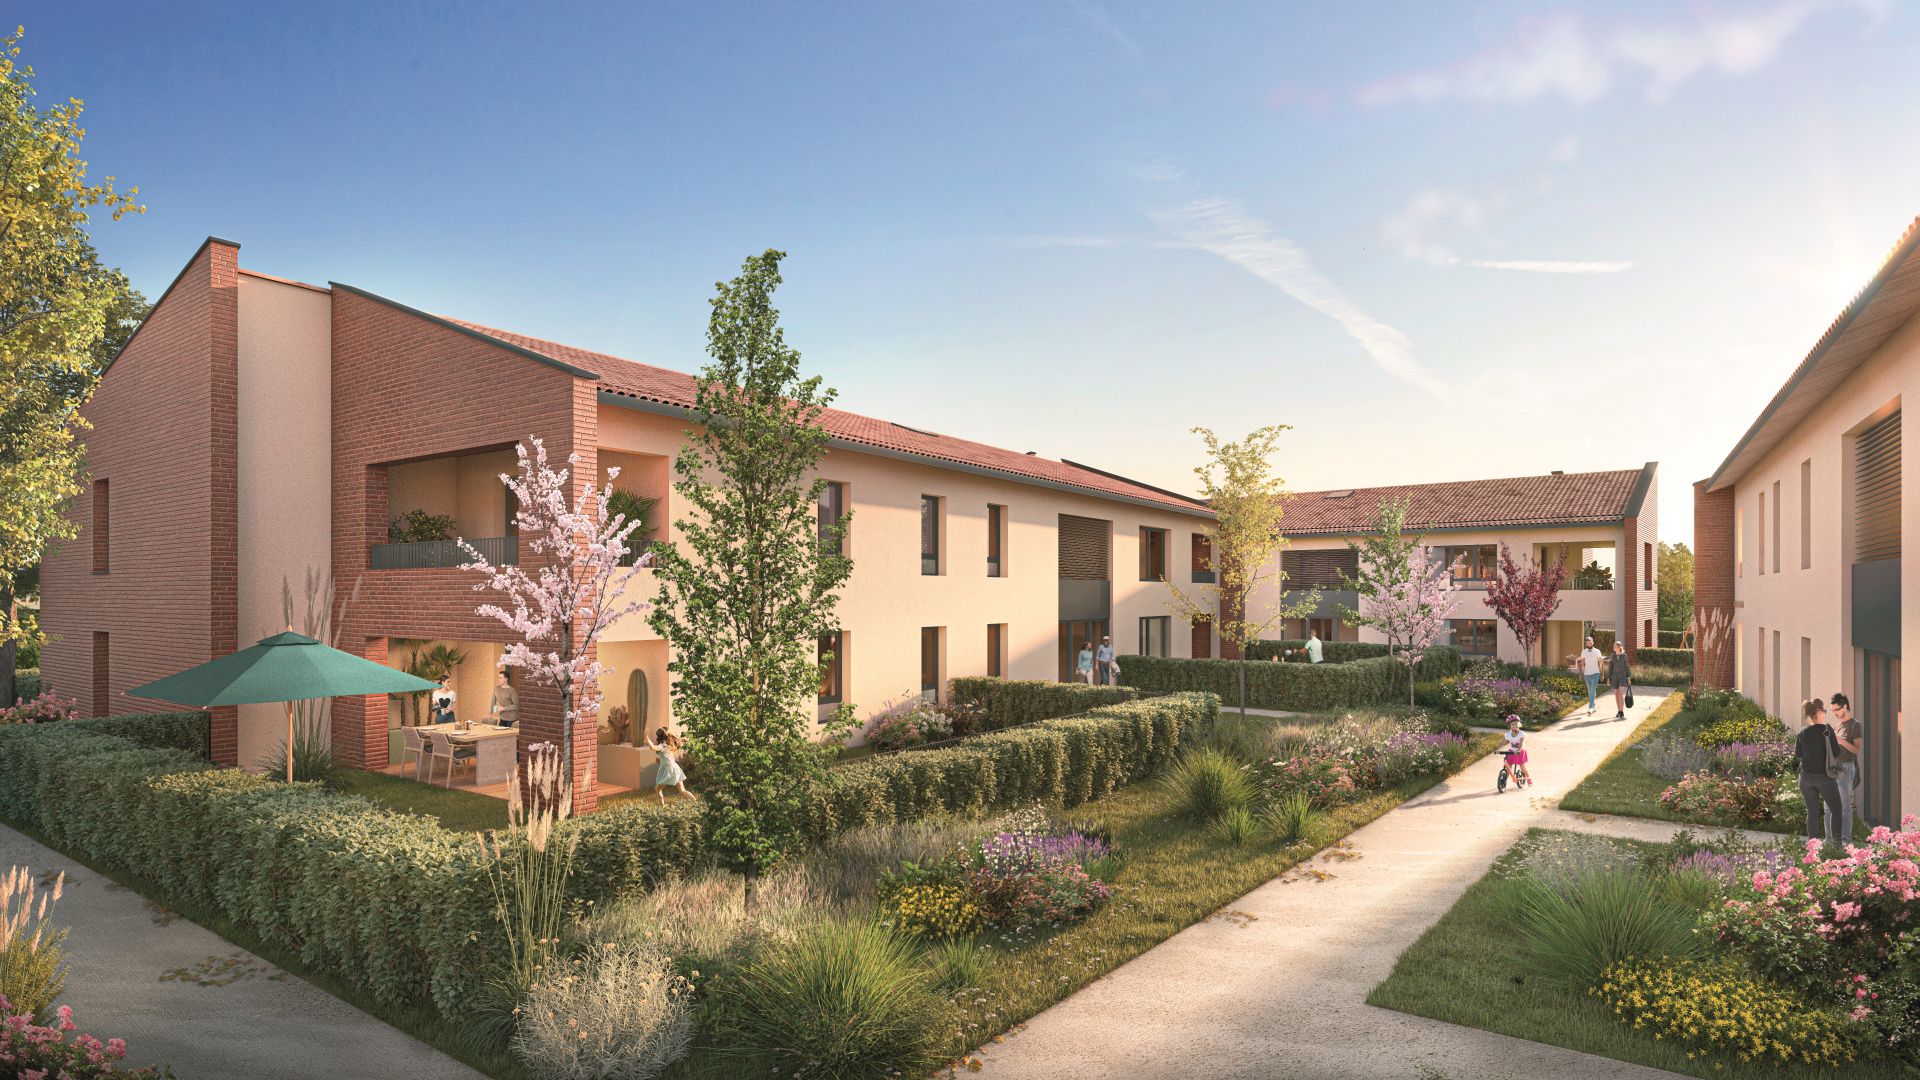 Greencity immobilier - achat appartements neufs T2 - Résidence Le Virebent - 31140 Launaguet  